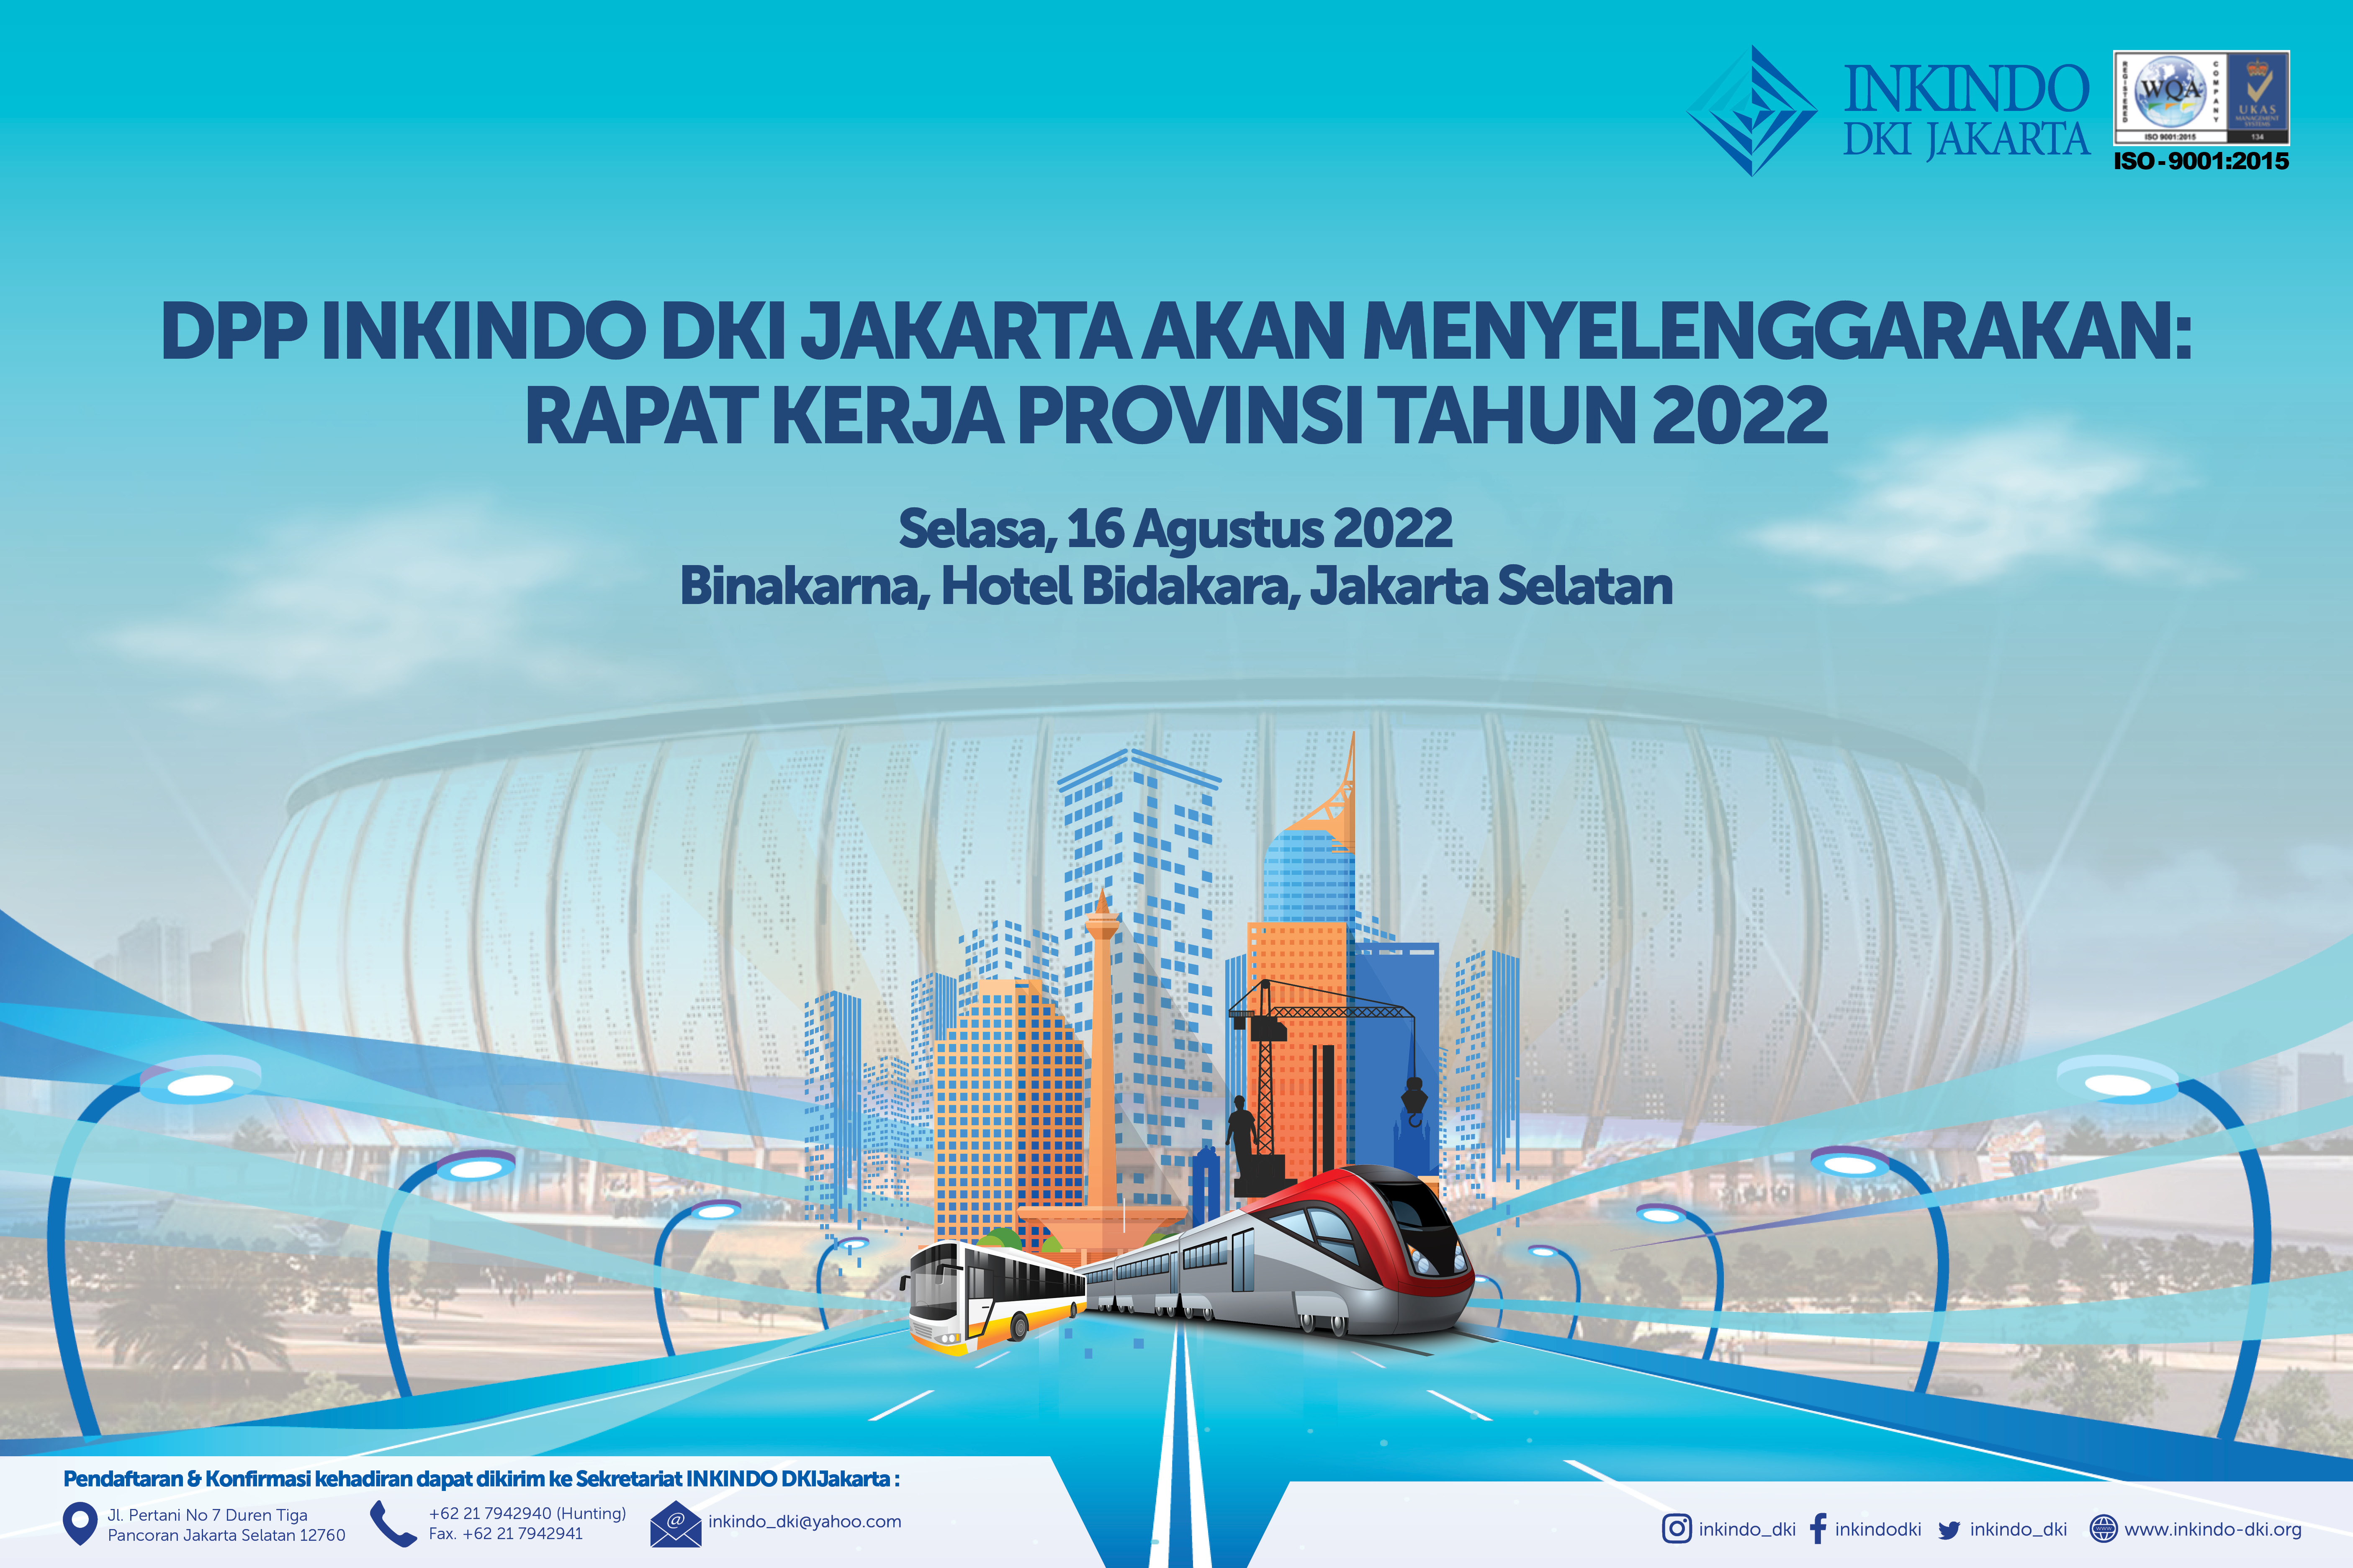 Rakerprov INKINDO DKI Jakarta Tahun 2022